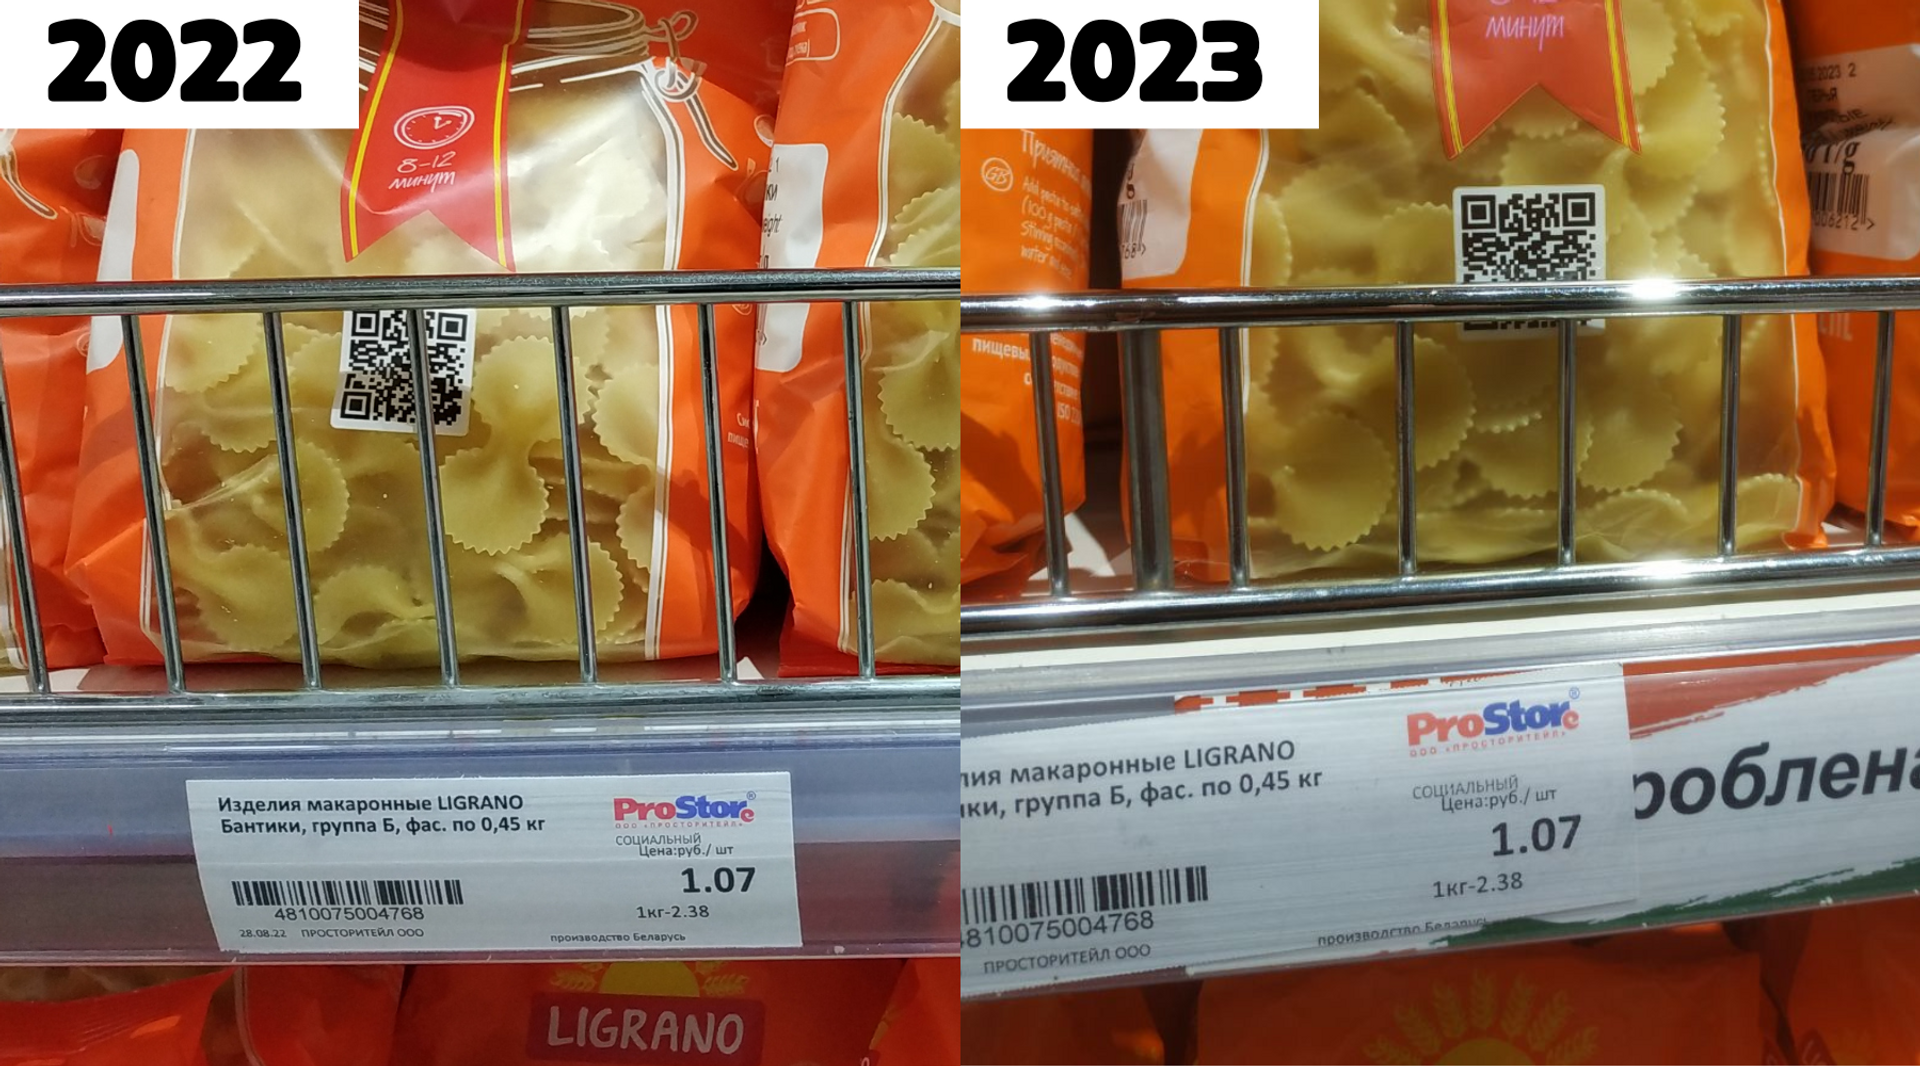 Цены в магазинах в 2022 и 2023 годах - Sputnik Беларусь, 1920, 05.10.2023